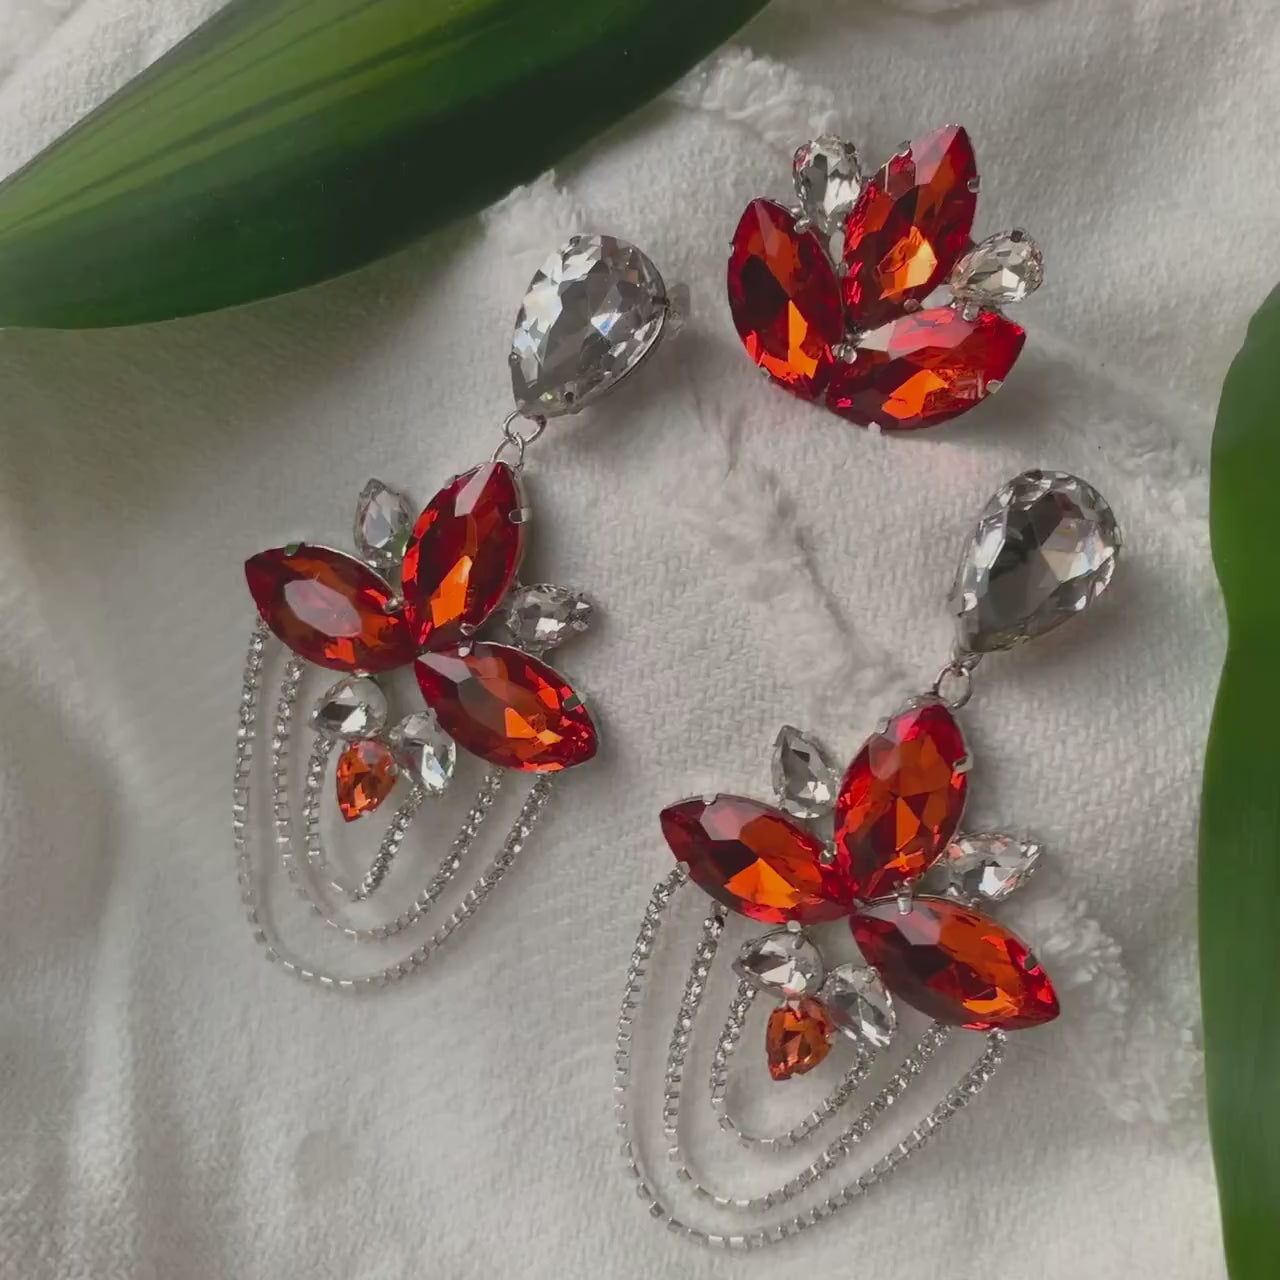 Chandelier Earrings / Clip On or Pierced / Statement Earrings / Crystal Jewelry / Dress Earrings / Drag Queen